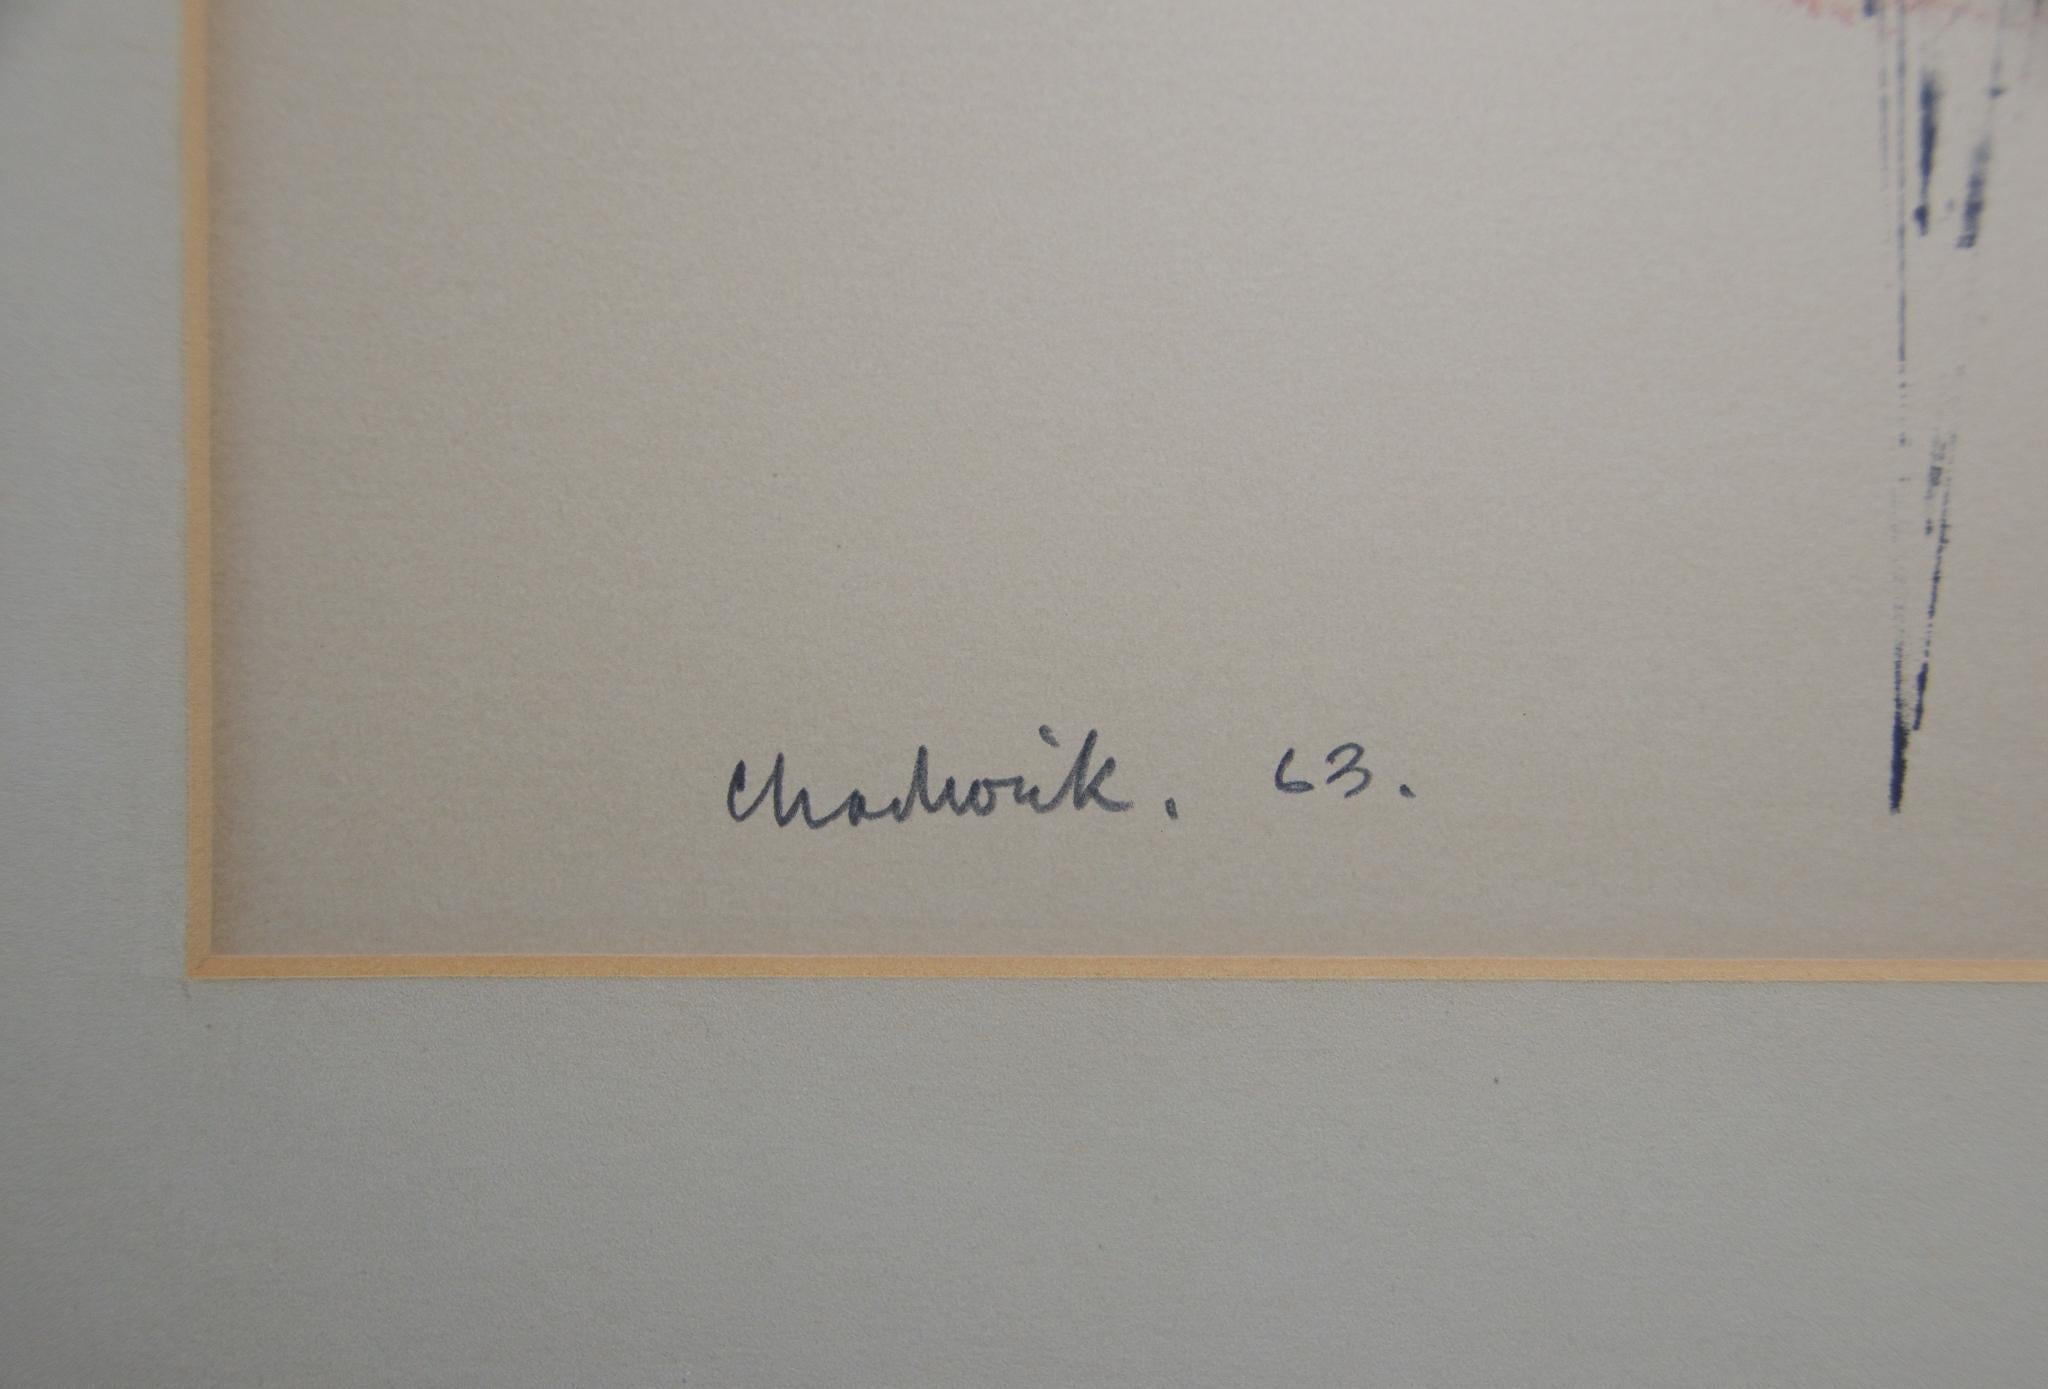 chadwick artist signature